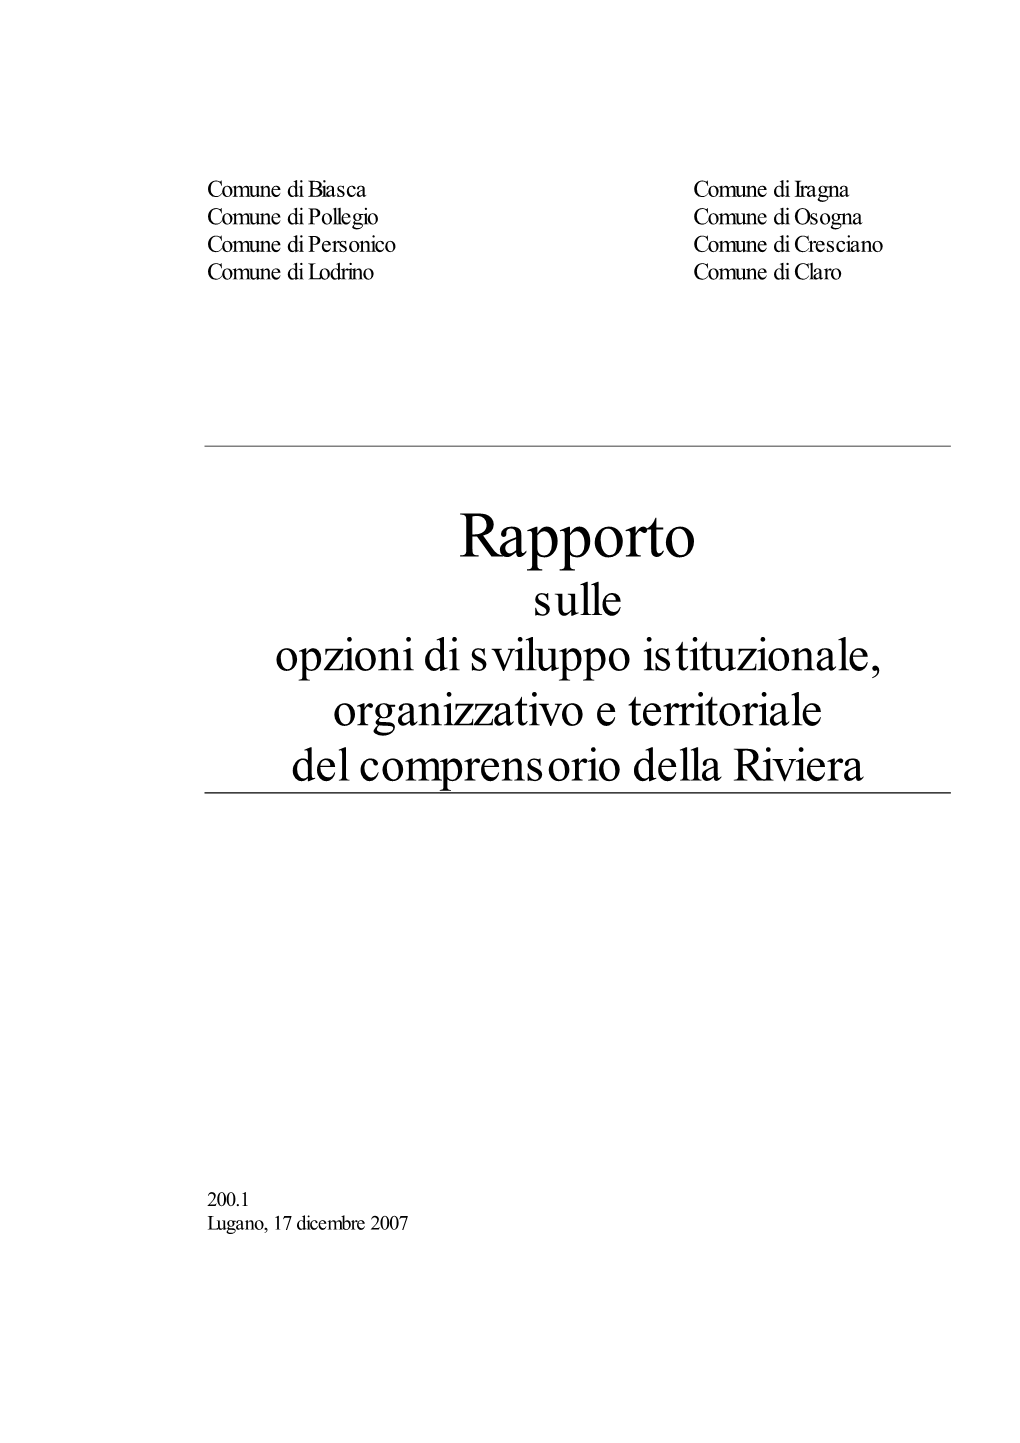 Rapporto Sulle Opzioni Di Sviluppo Istituzionale, Organizzativo E Territoriale Del Comprensorio Della Riviera